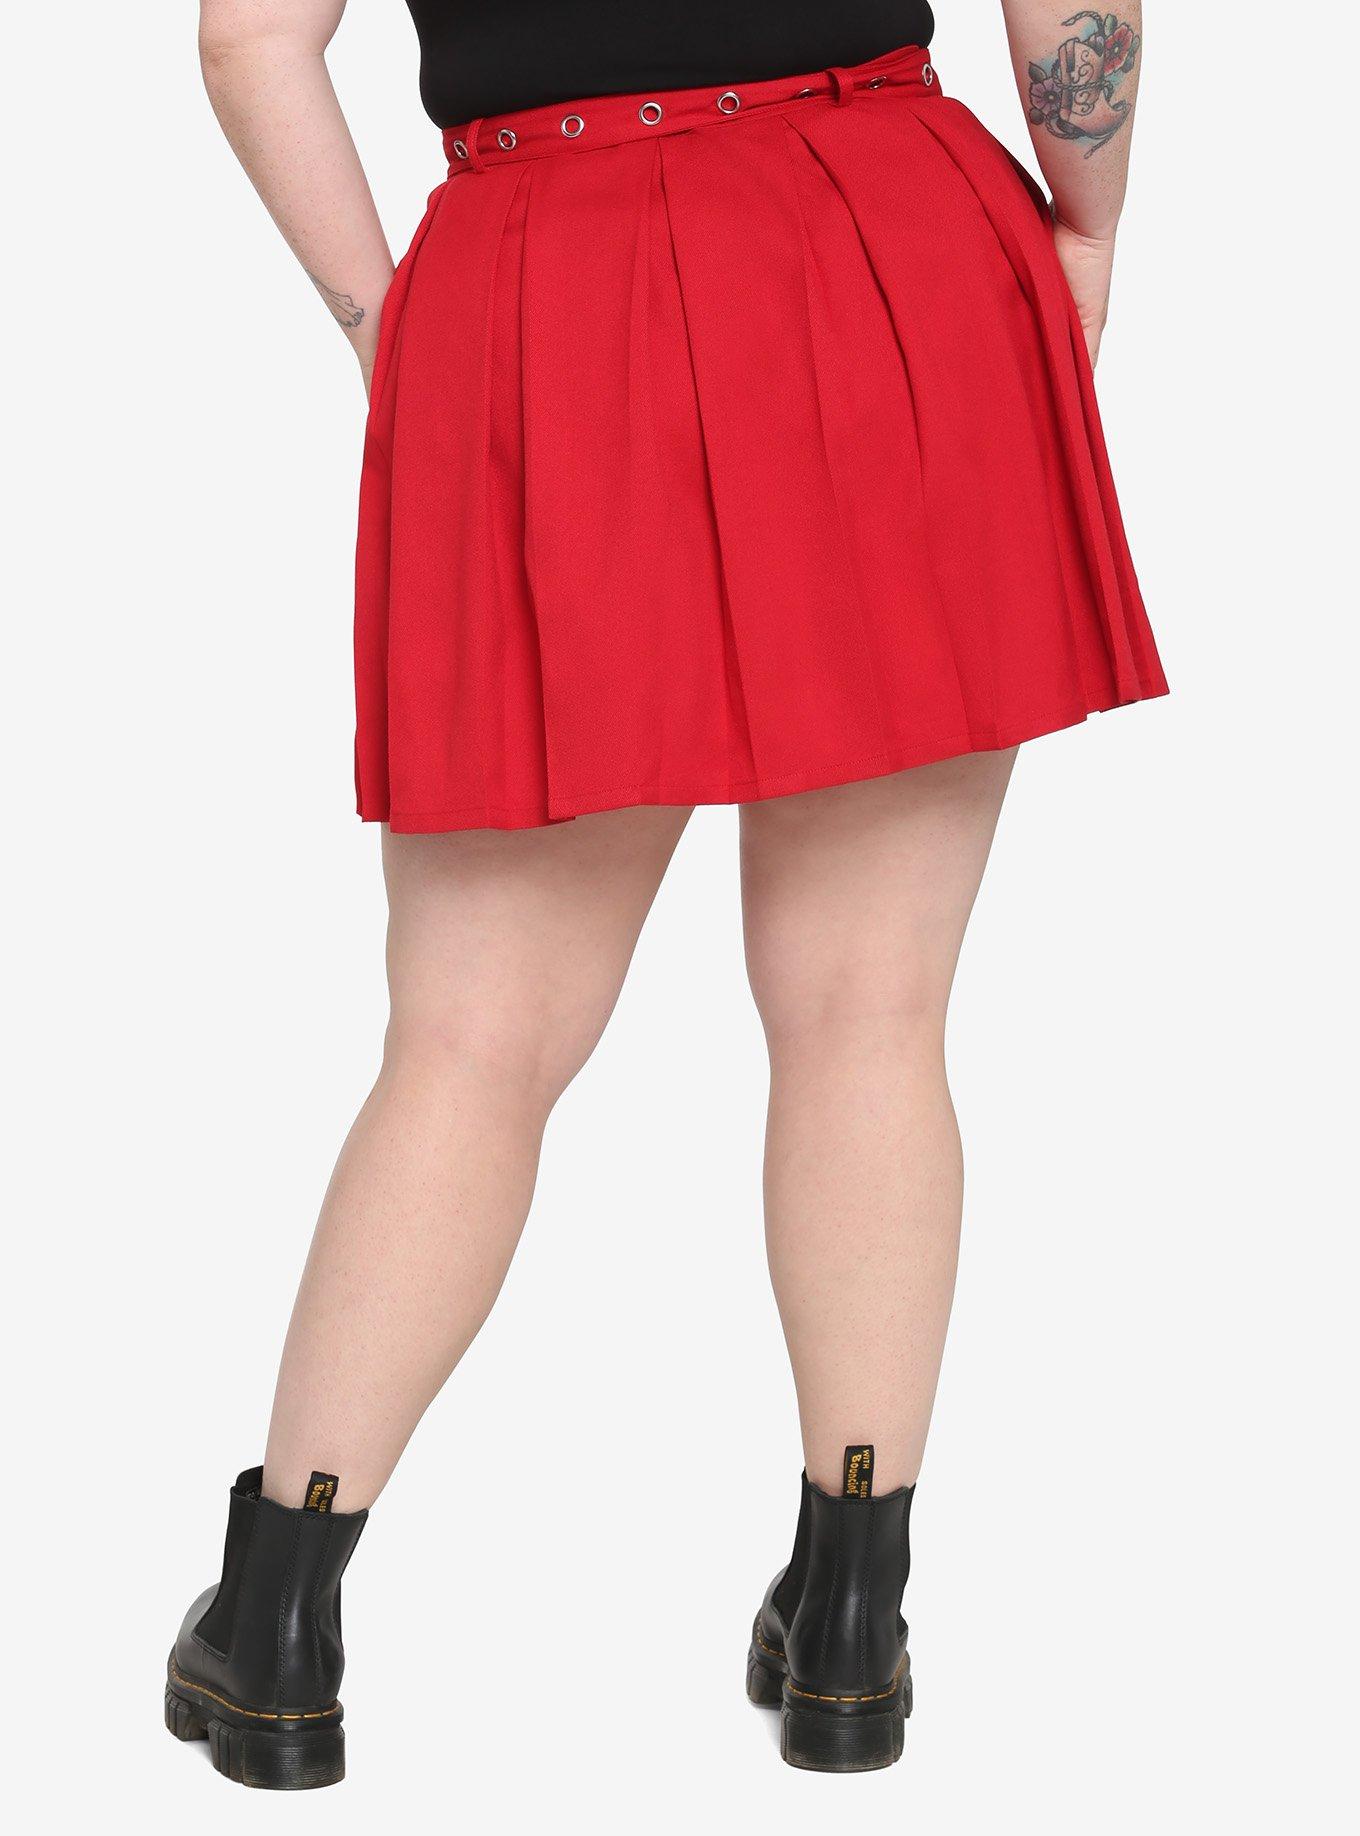 Red Heart Grommet Belt Pleated Skirt Plus Size, RED, alternate